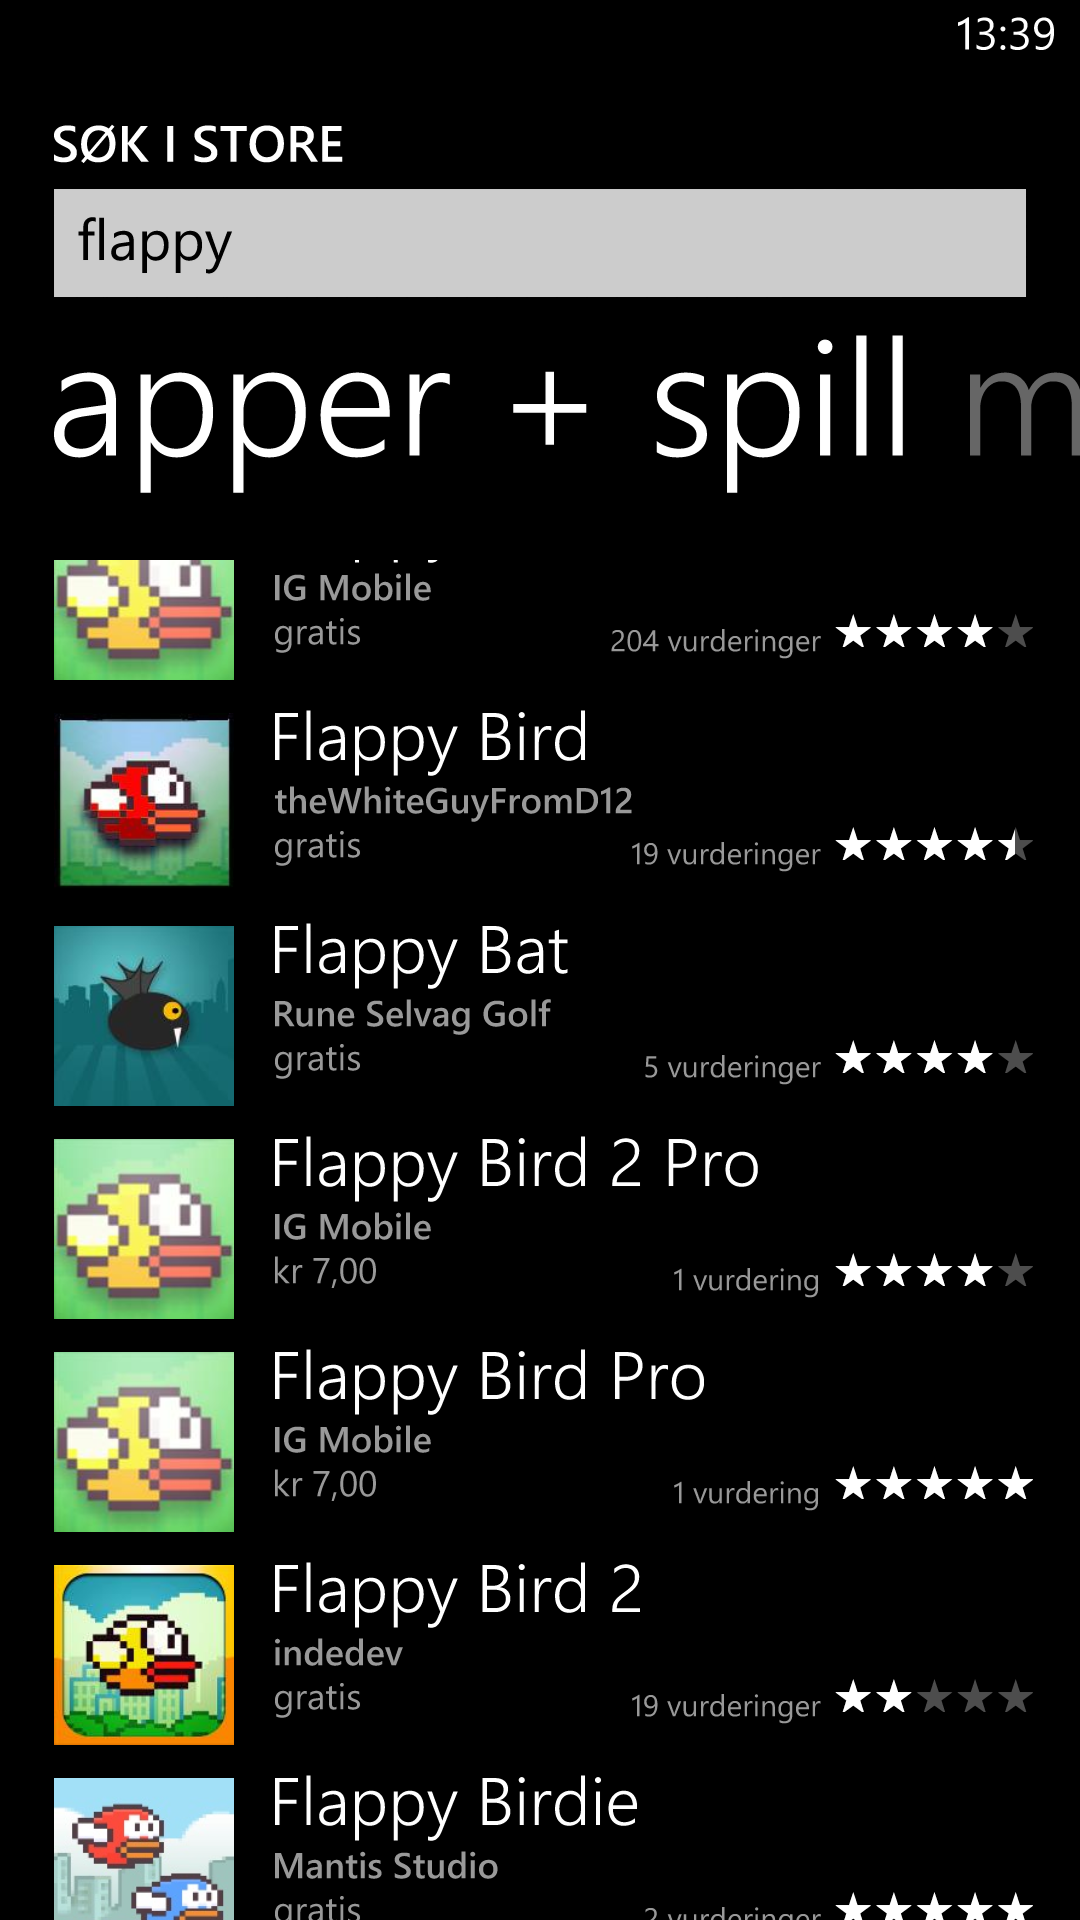 Mens både Apple og Google har satt bremsene på for Flappy Bird-klonene, er det tett mellom dem i Microsofts appbutikk.Foto: Finn Jarle Kvalheim, Amobil.no